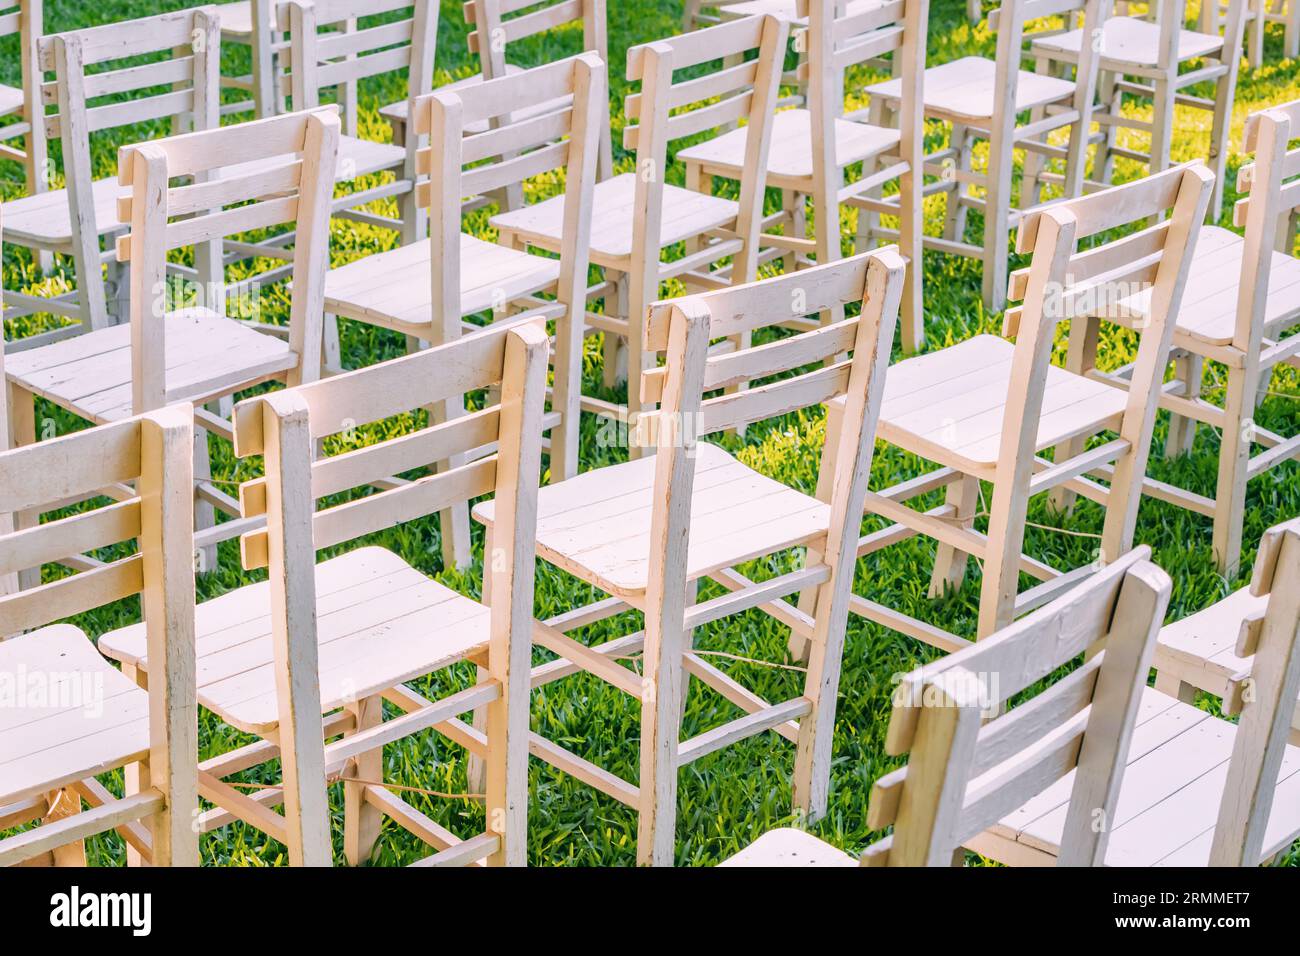 Die Hochzeitsszene der Natur: Eine wunderschön eingerichtete Gartenhochzeit mit weißen Stühlen vor der grünen Kulisse fängt das Wesen eines eleganten Außenbereichs ein Stockfoto